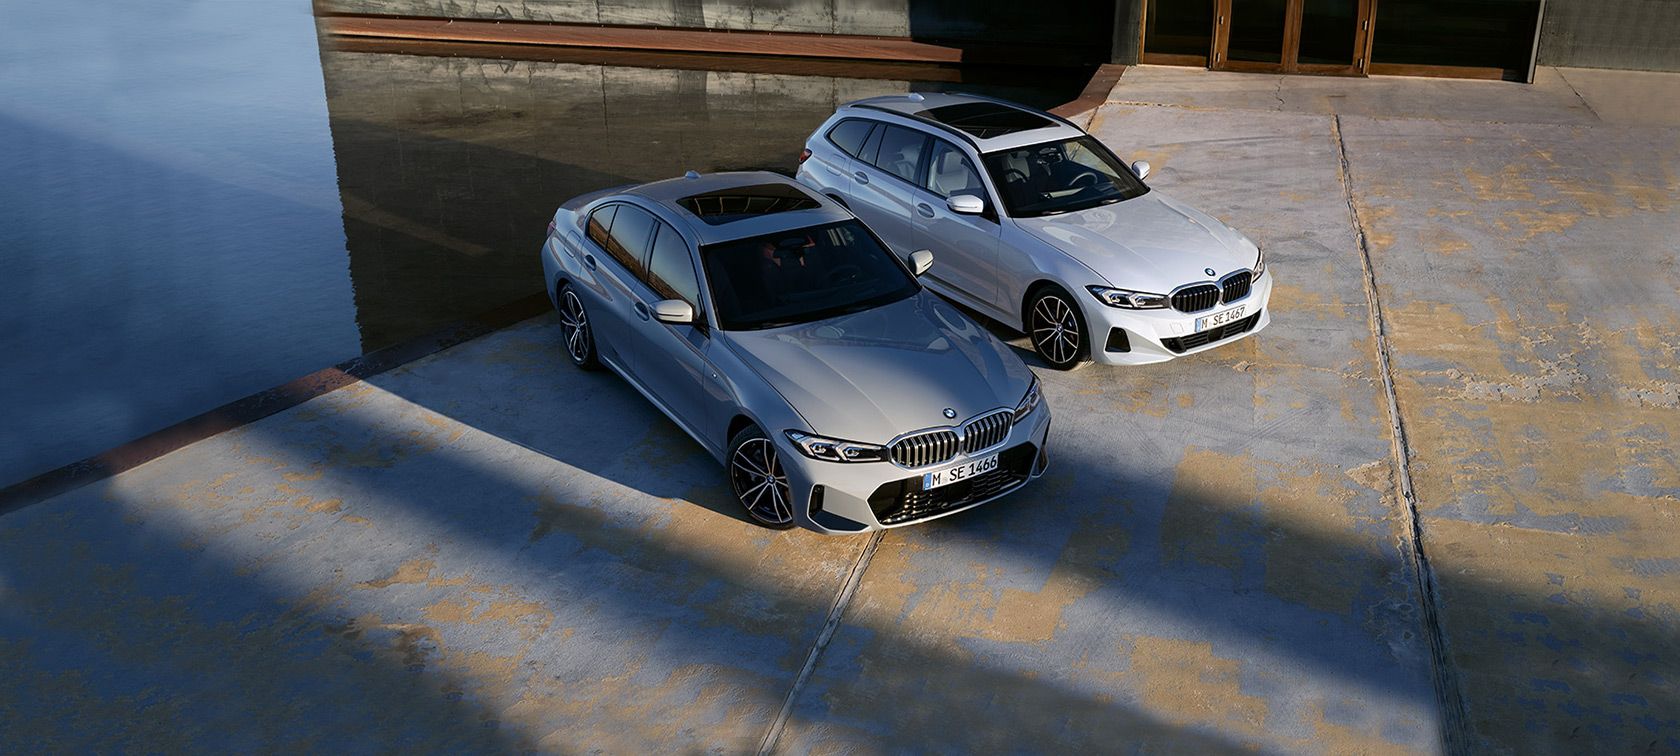 BOBRINK GRUPPE : BMW Fahrzeuge, Services, Angebote u.v.m.